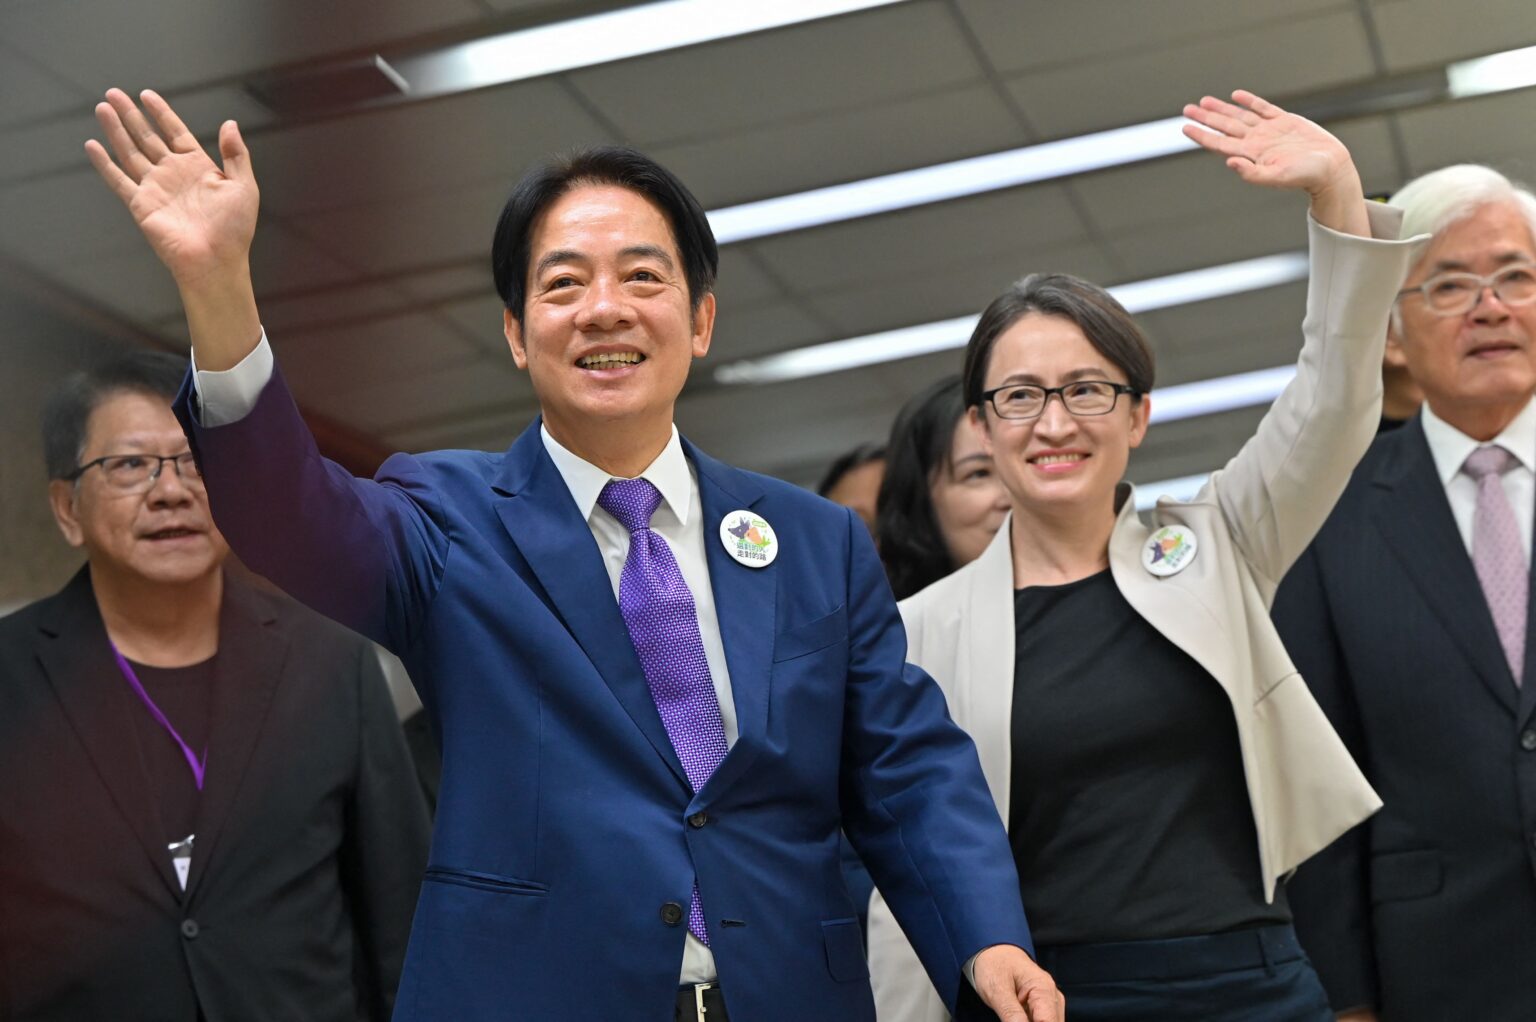 Phó Tổng Thống Lại Thanh Đức (William Lai, trái) và bà Tiêu Mỹ Cầm (Hsiao Bi-khim), đại diện Đài Loan tại Mỹ, trong liên danh đại diện đảng DPP đương quyền ứng cử cuộc bầu cử tổng thống đầu năm 2024. Ảnh: Sam Yeh/AFP via Getty Images